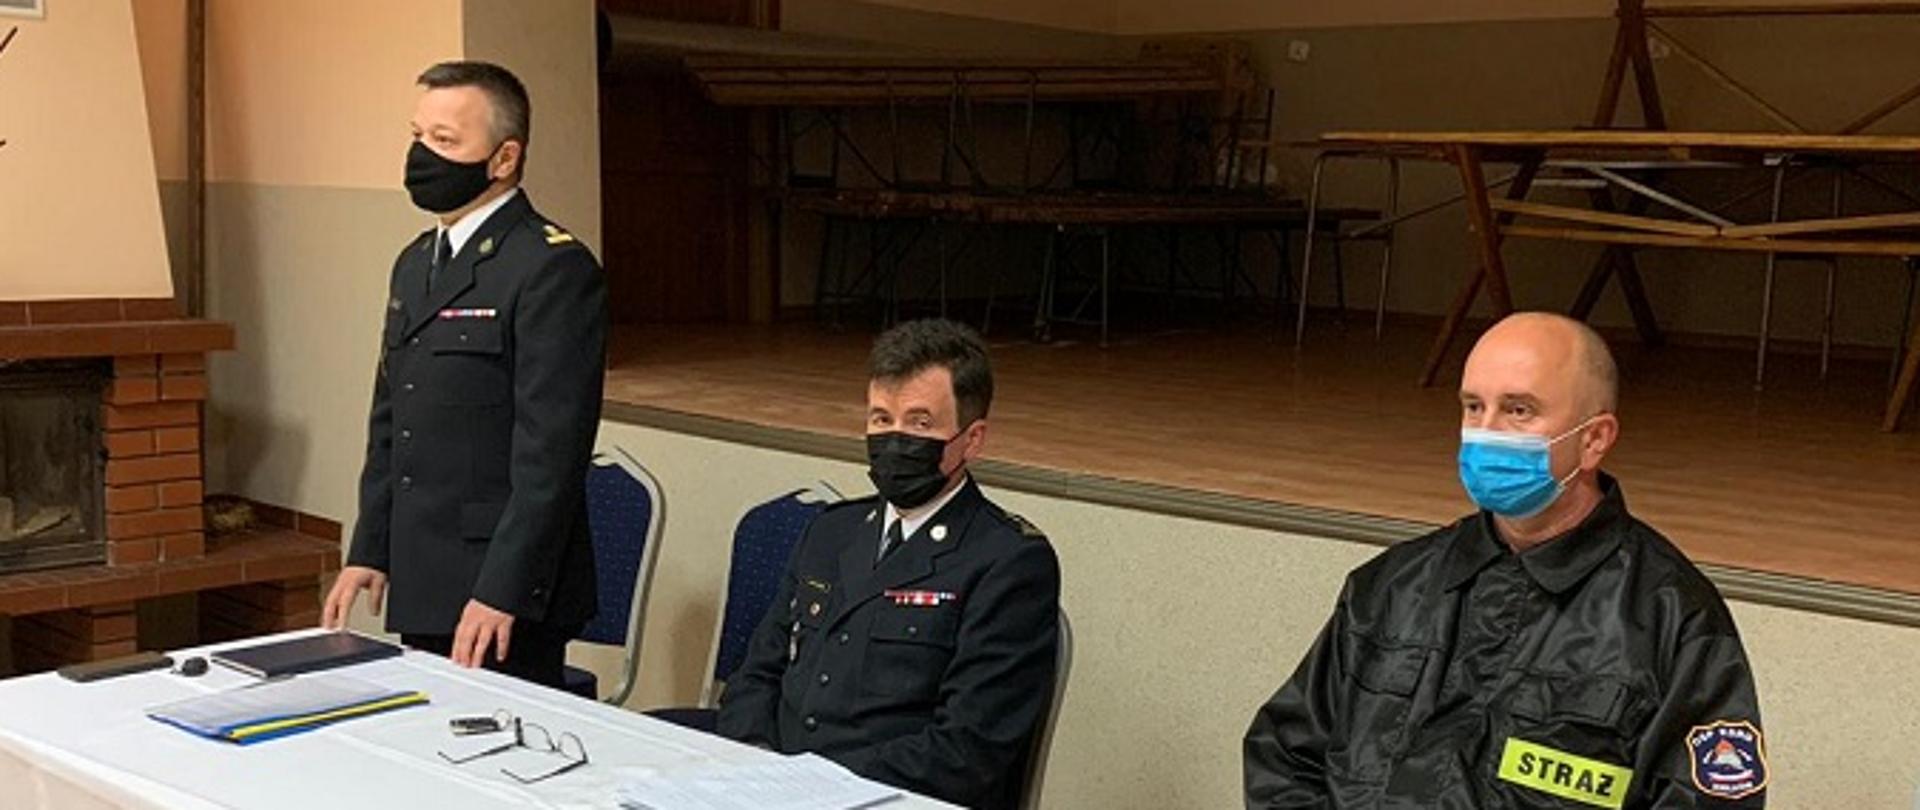 Zdjęcie zrobione w sali. Na fotografii przy stole prezydialny siedzą trzy osoby podczas spotkania. Wśród nich dwóch strażaków PSP ubranych w mundury wyjściowe oraz dh OSP ubrany w mundur koszarowy.